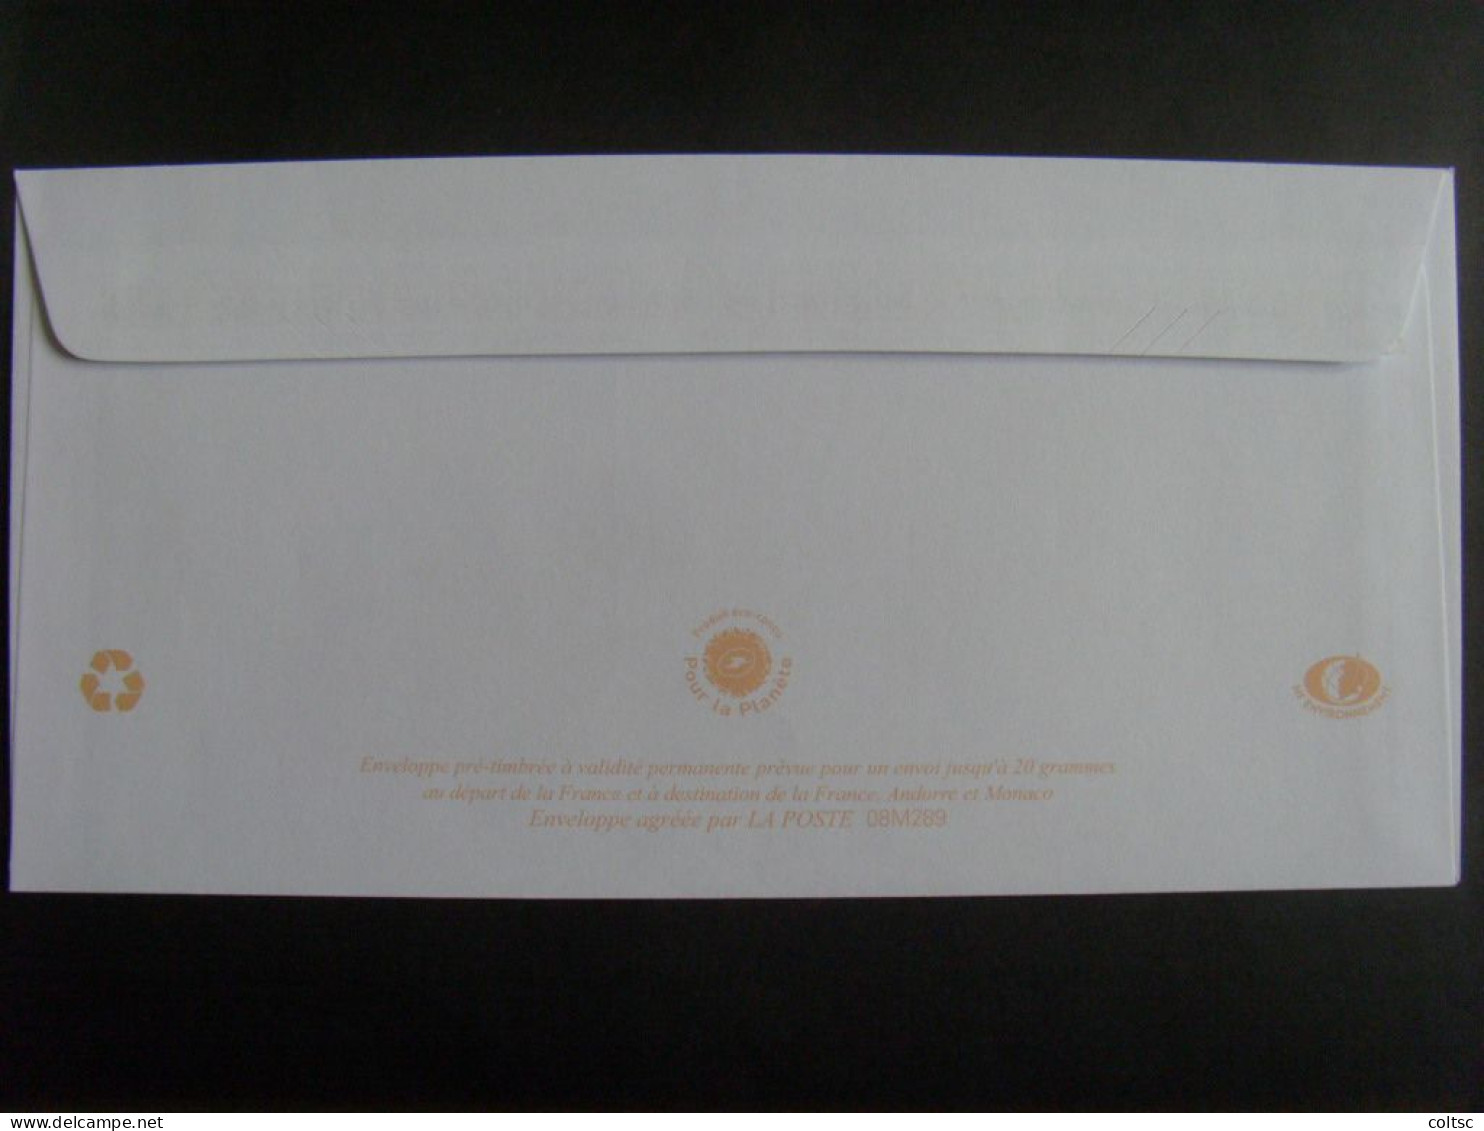 64- PAP TSC Arbre à Lettres à Fenêtre, CIC, Agr. 08M289, Patte Autocollante, Intérieur Gris Uni, N - Prêts-à-poster:Stamped On Demand & Semi-official Overprinting (1995-...)